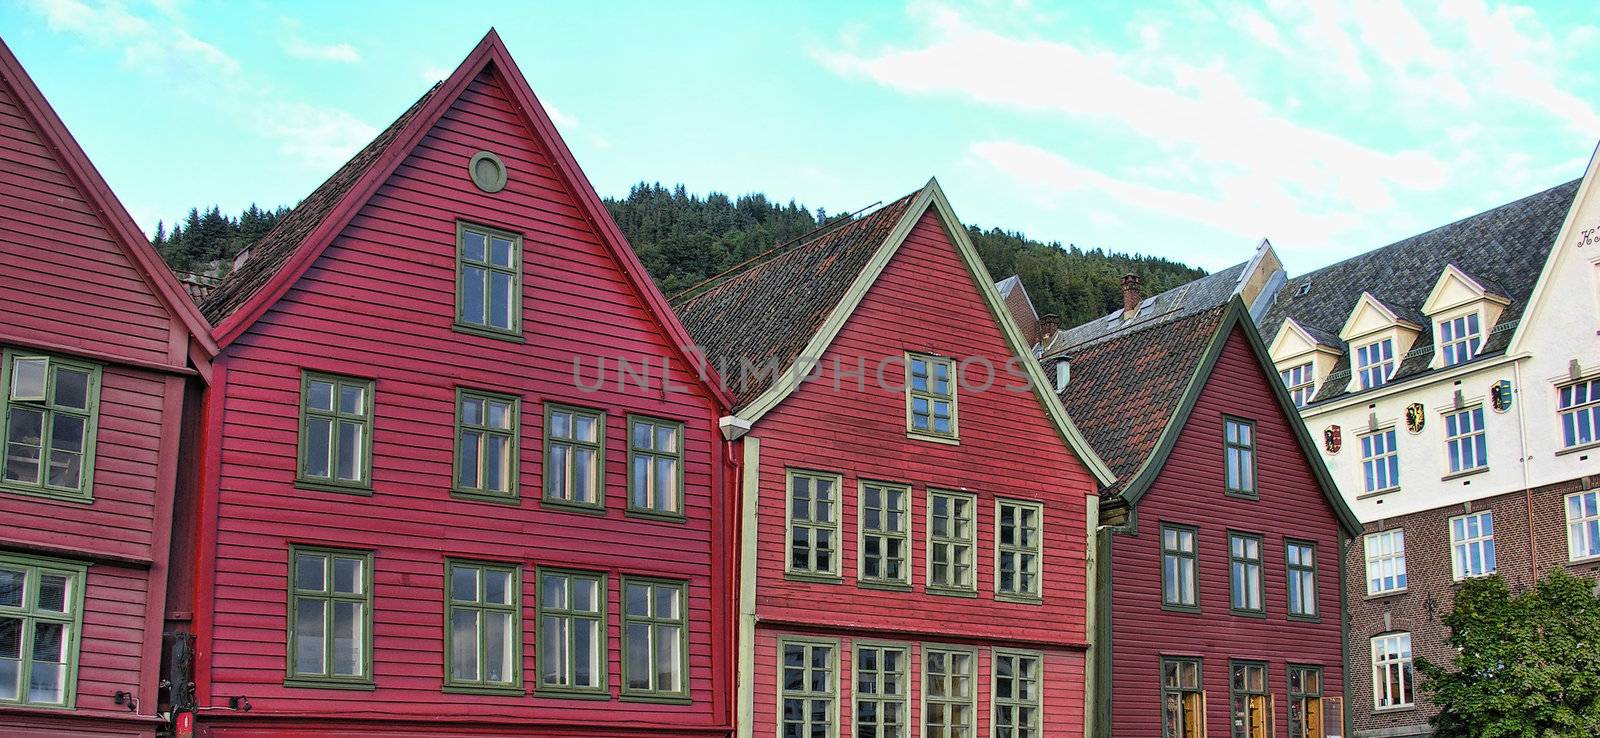 Architecture of Bergen, Norway by jovannig